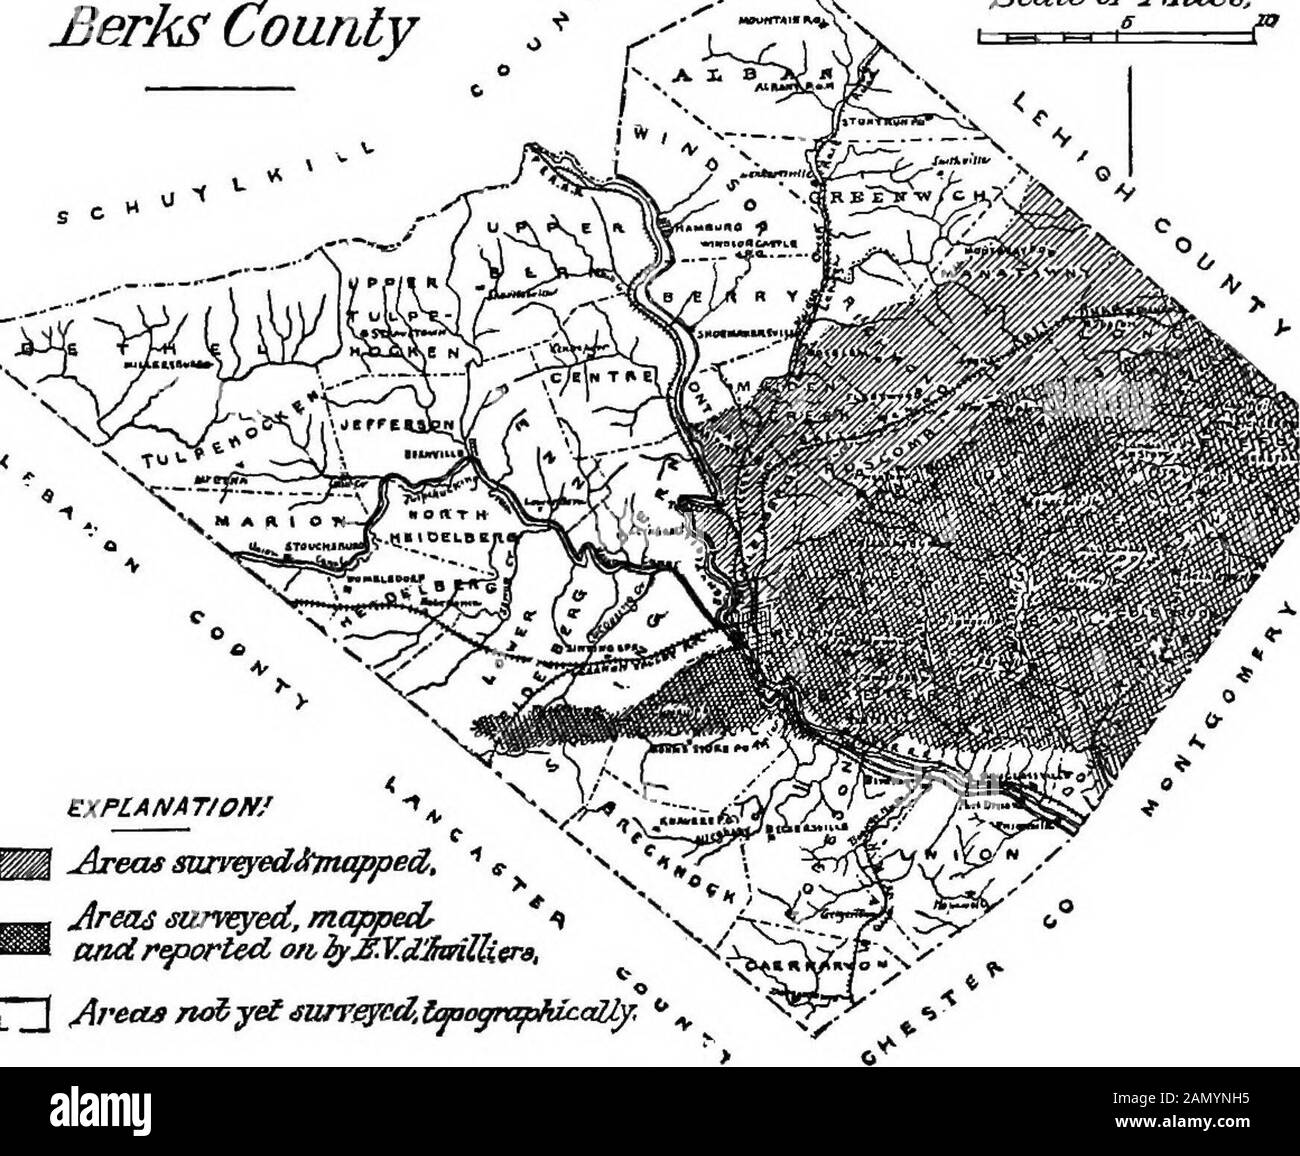 Informe de progreso 1874-1889, A-Z .. . LETTEK DEL SR. DINYILLIEES. 907 Walnut Street, Philadelphia, Julio I, 1883.Prof. J. P. Lesley, Slate Geologist: Estimado Señor: Tengo el honor de presentarle mi informe sobre la geología y topografía de las montañas del Sur o las colinas de Reading del condado de Berks, con la frontera de la formación mesozoica en el sur incluida en el condado. Mapa de £erks Escala del condado de mues.. TJONAT/om - JIERAS saneed, majoxA ? i [ greets ru   iurFgyai.laangn tAicaUy, (xists.) Xii D INFORME PROGRESO OP. E. V. dINVILLIERS. De acuerdo con las instrucciones recibidas de usted en thespring Foto de stock